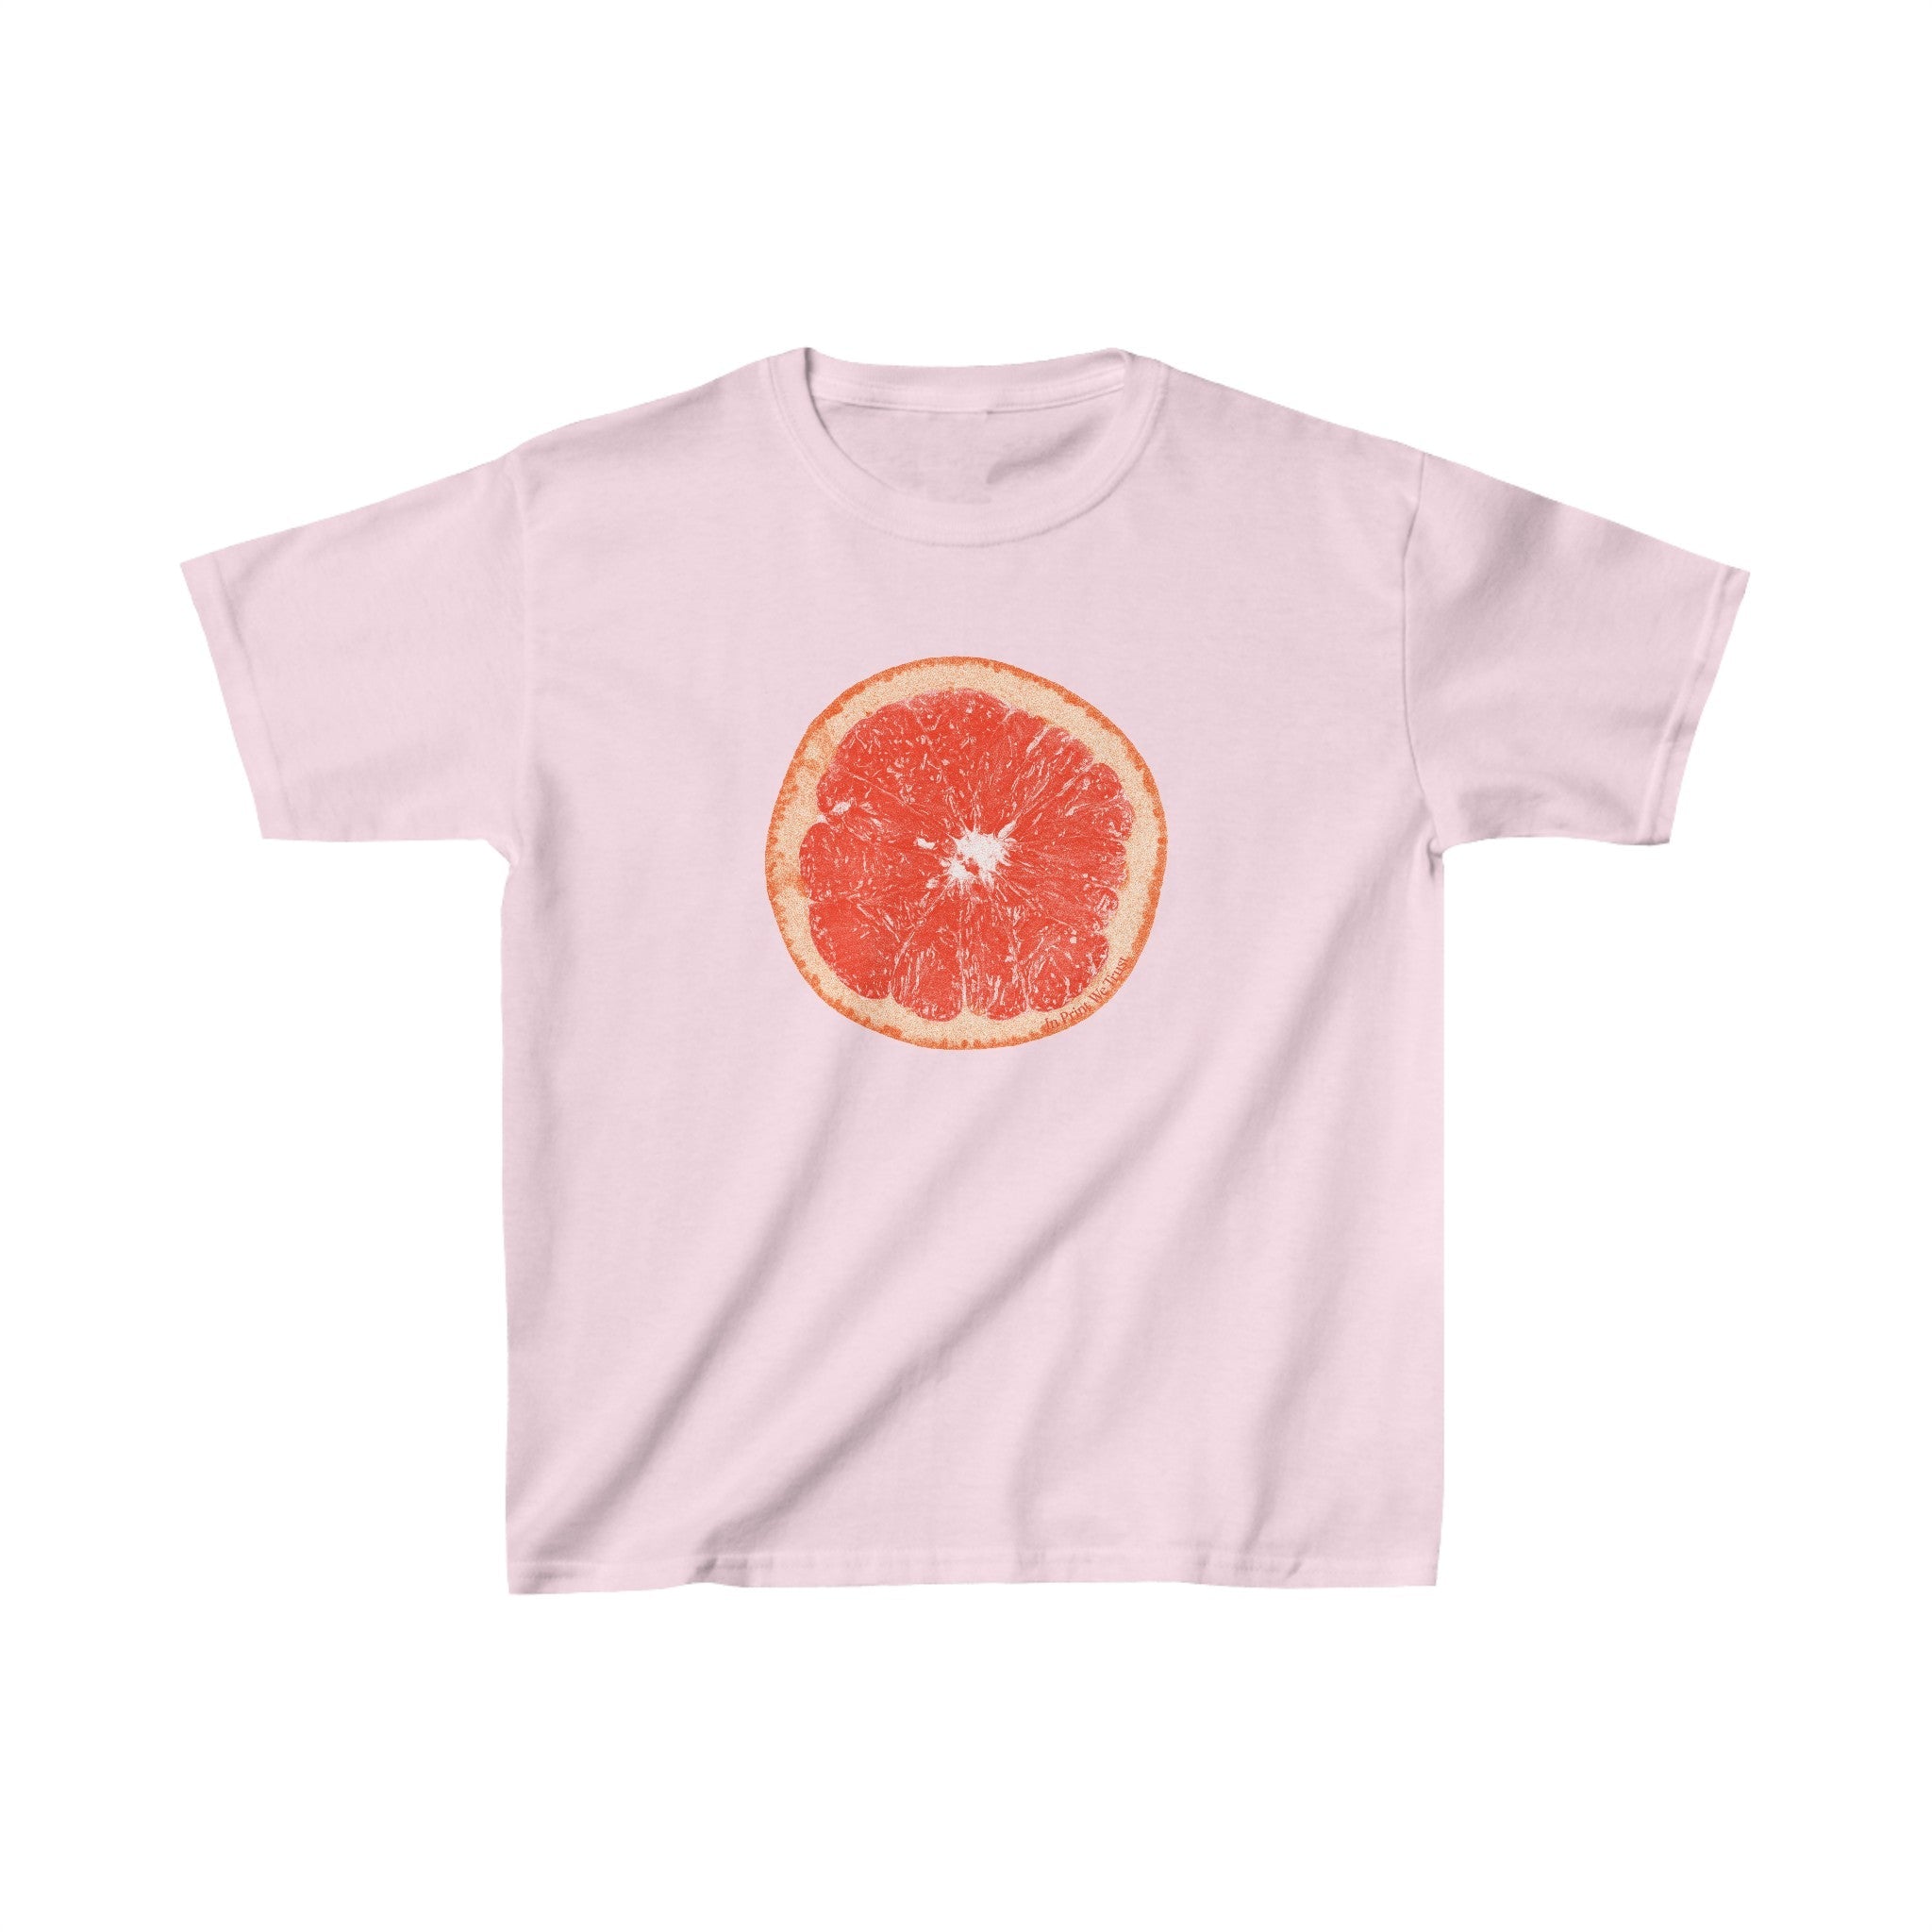 'Grapefruit' baby tee - In Print We Trust